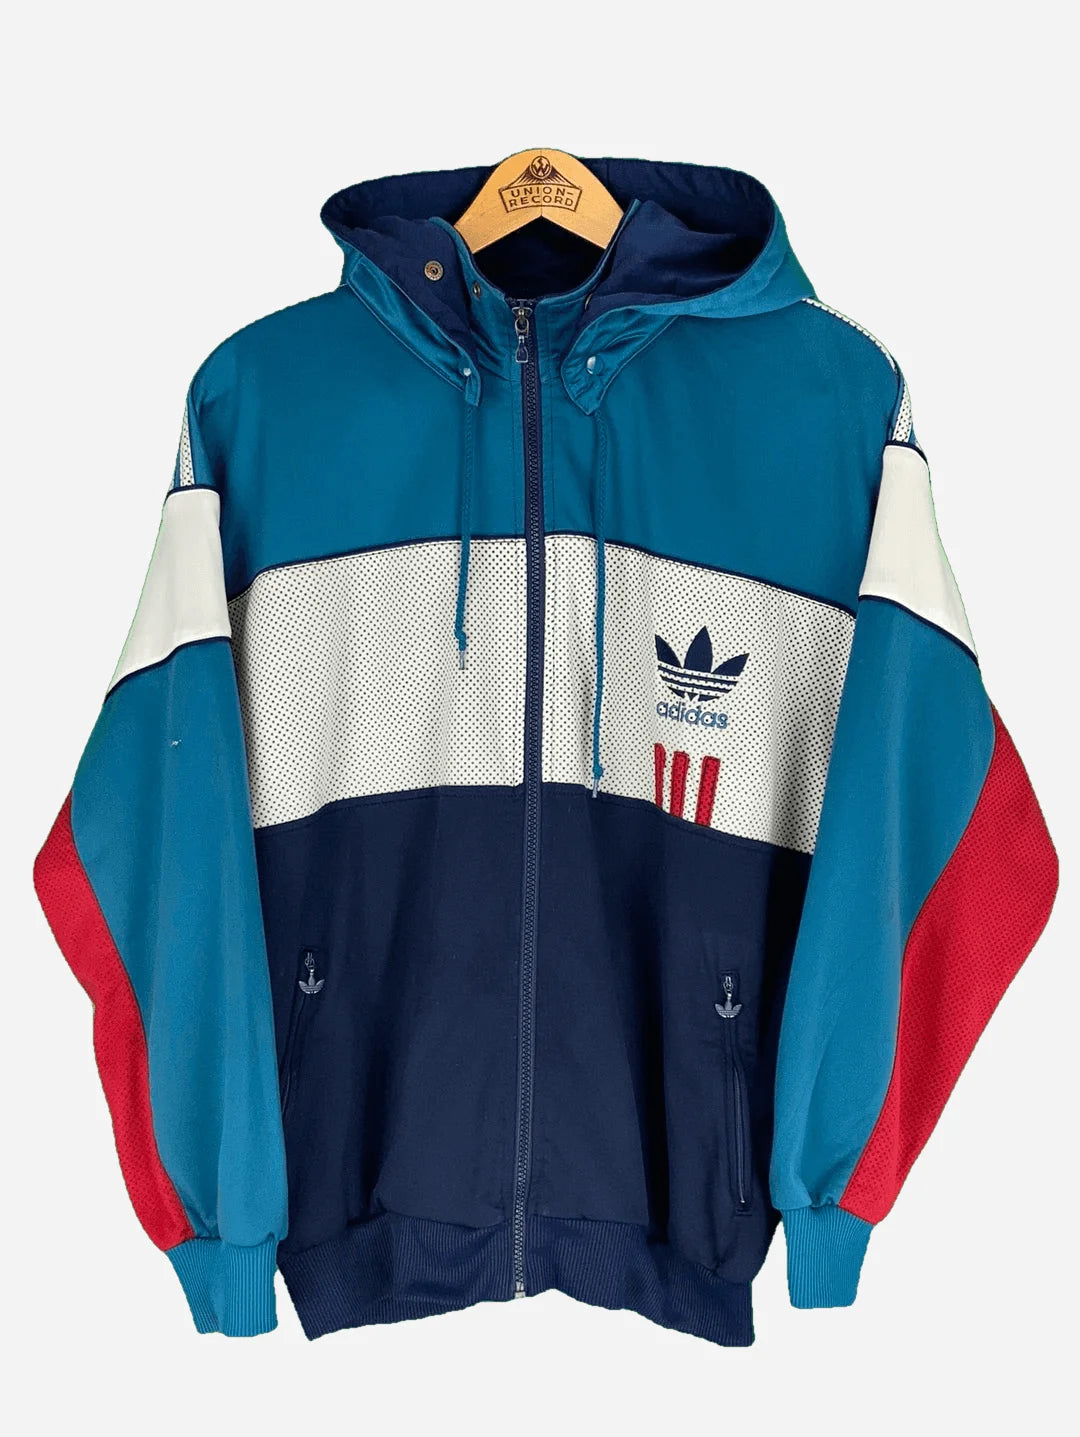 Adidas training jacket (S) D6